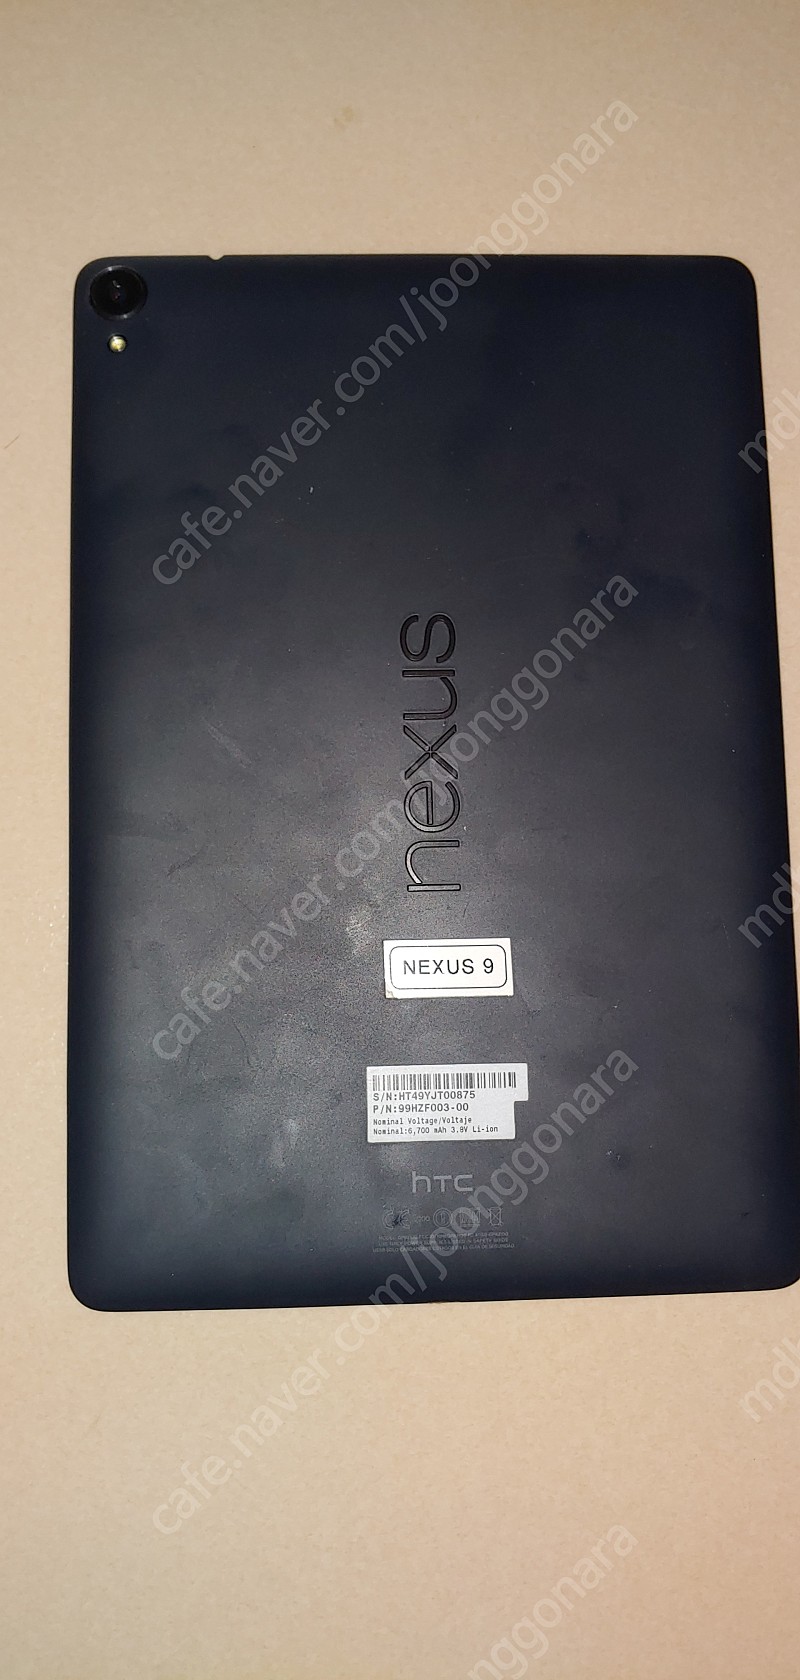 구글 넥서스9 NEXUS9 판매합니다.